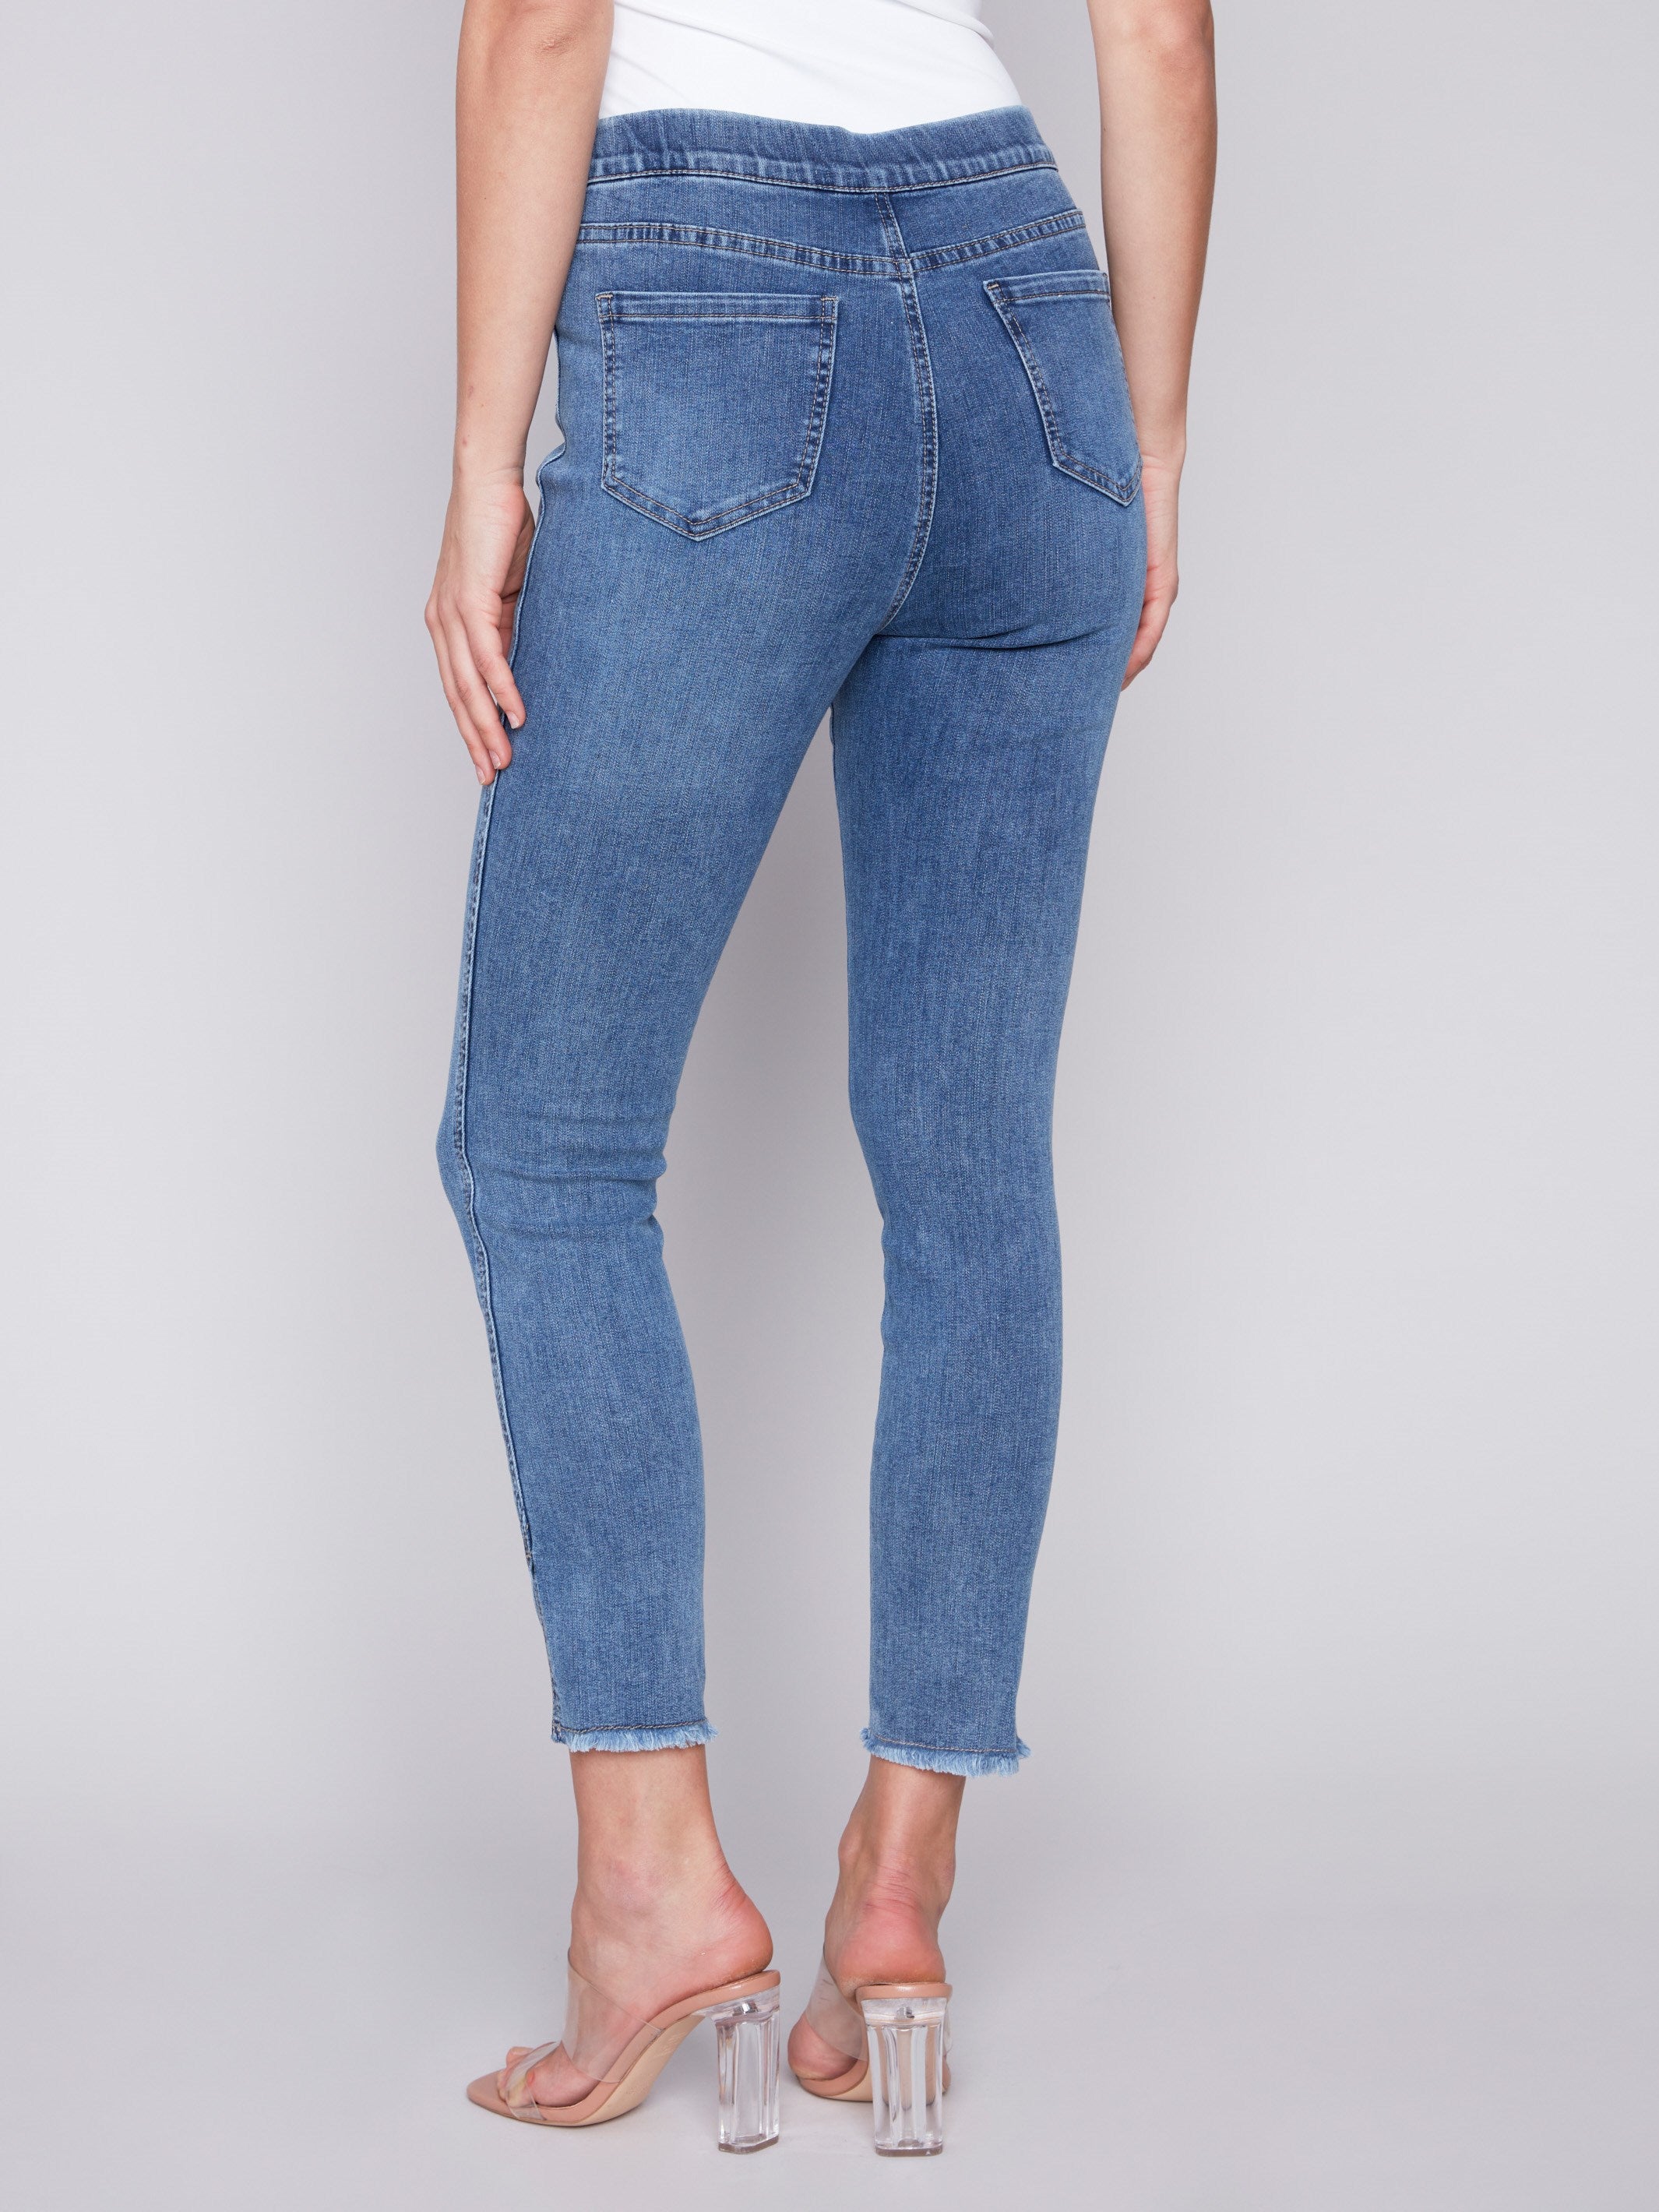 Charlie B Pull-On Jeans with Split Hem - Medium Blue - Image 3